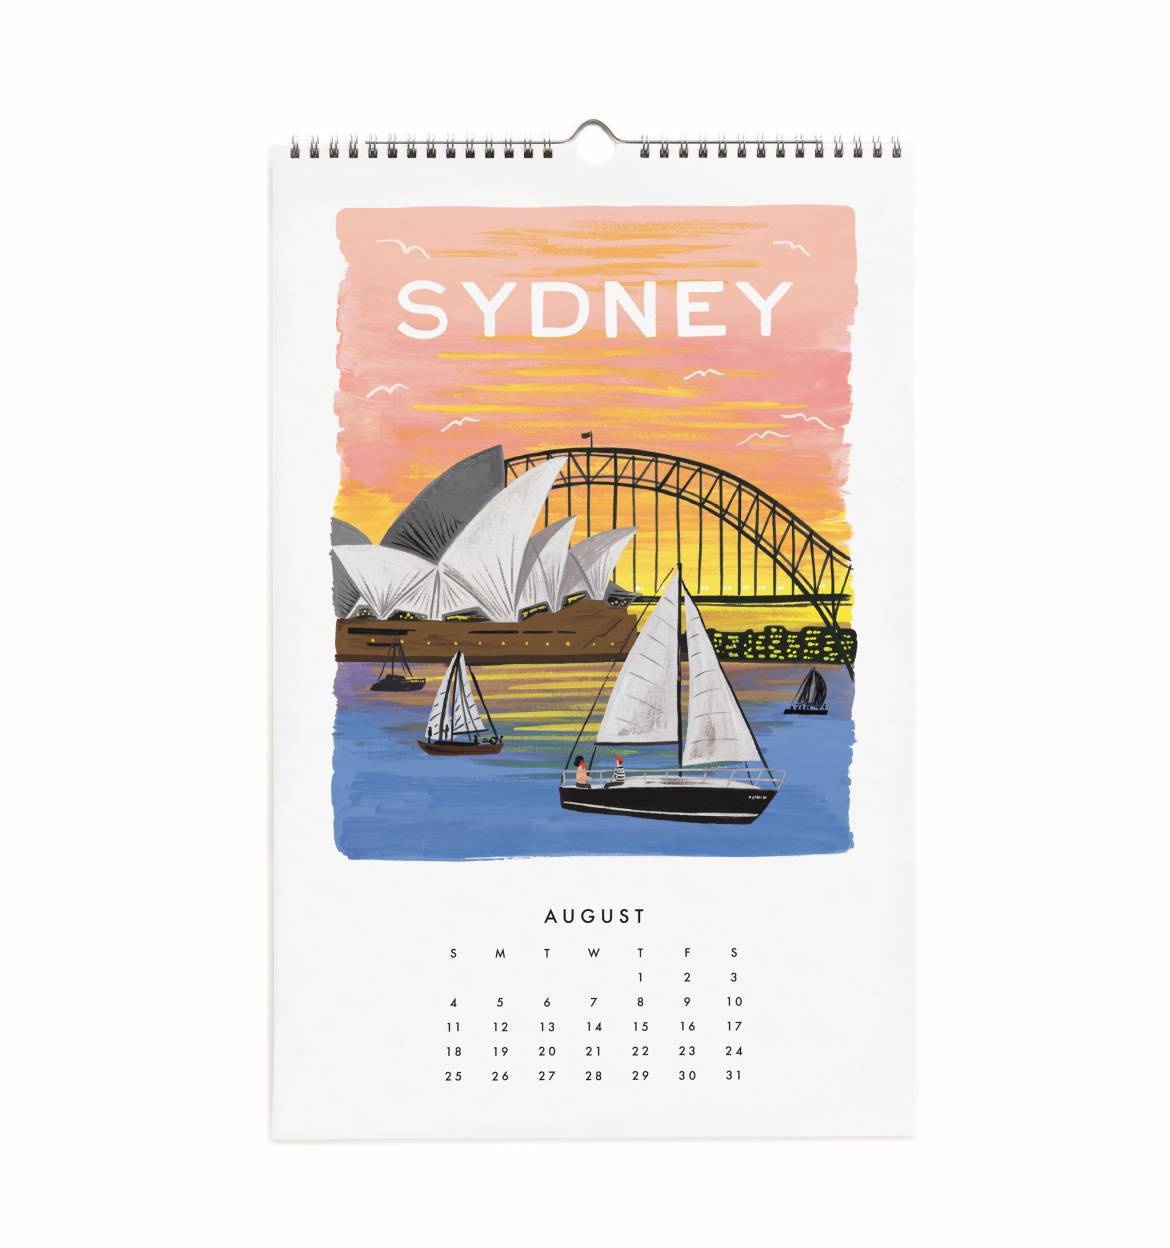 Wall Calendar 2019 - World Traveler